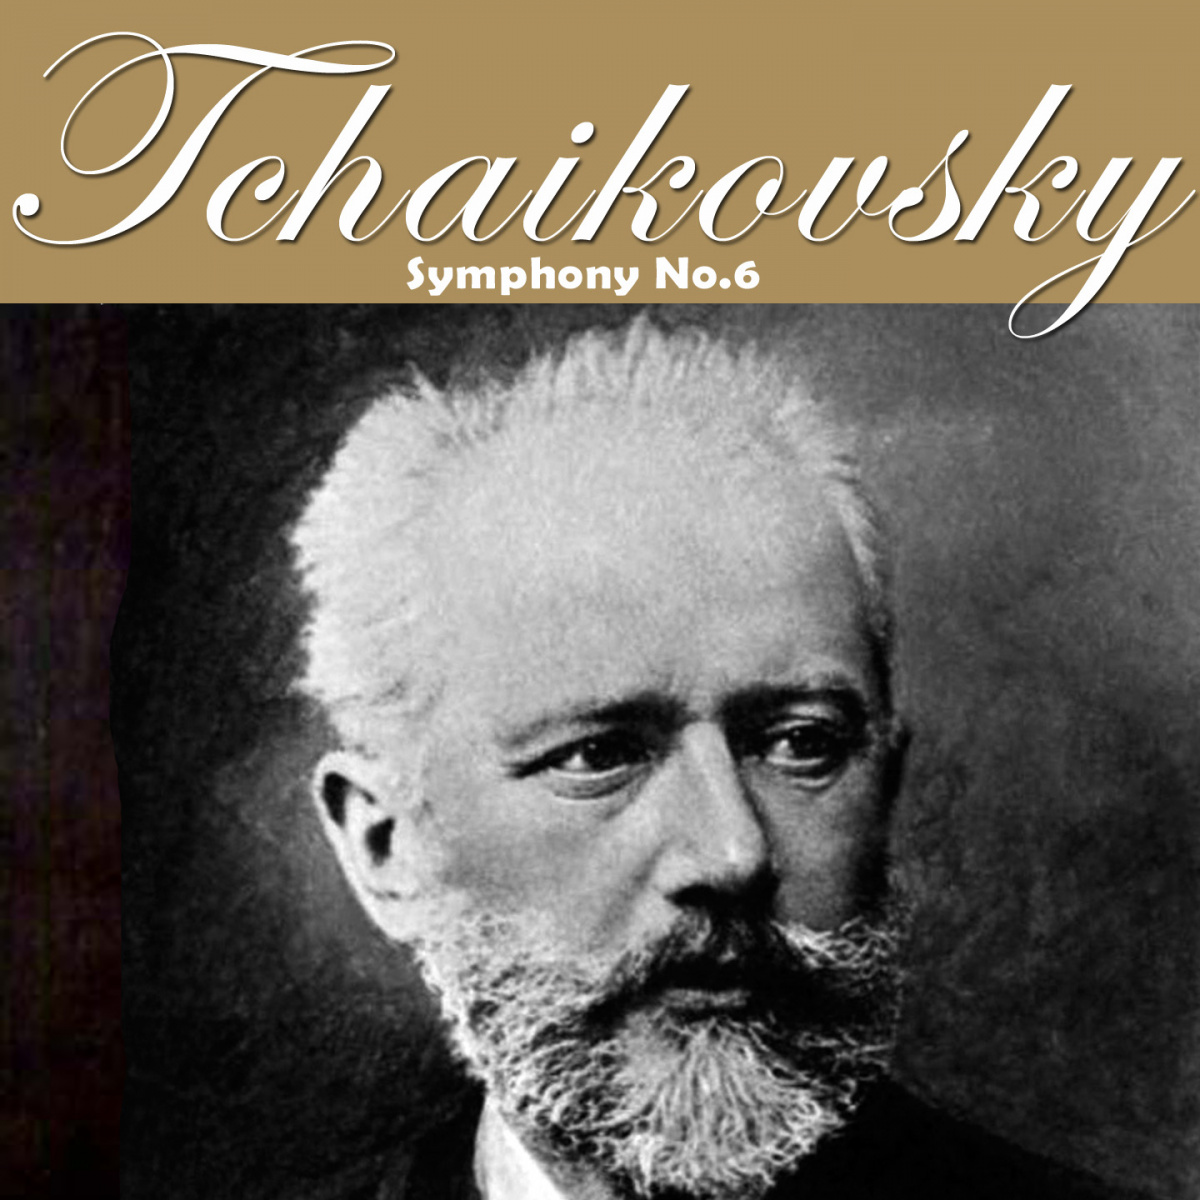 P. Tchaikovsky - Symphony No. 6, Op. 74 ‘Pathetique’: II. Allegro con grazia piano sheet music